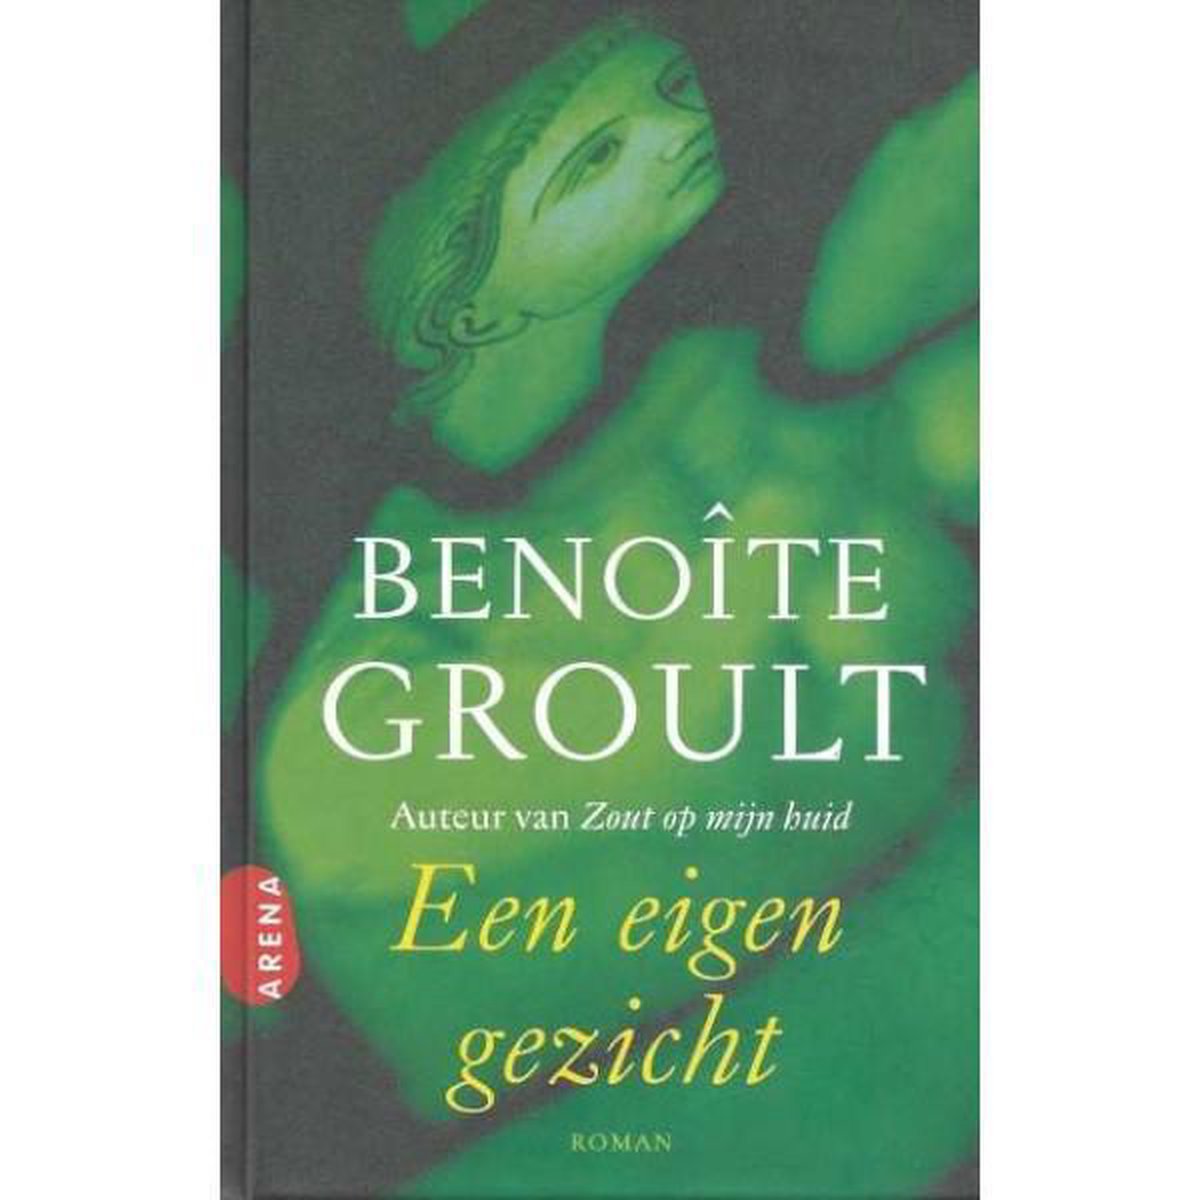 minimum Tenen Schaar Een Eigen Gezicht van Benoite Groult 1 x nieuw en 1 x tweedehands te koop -  omero.nl